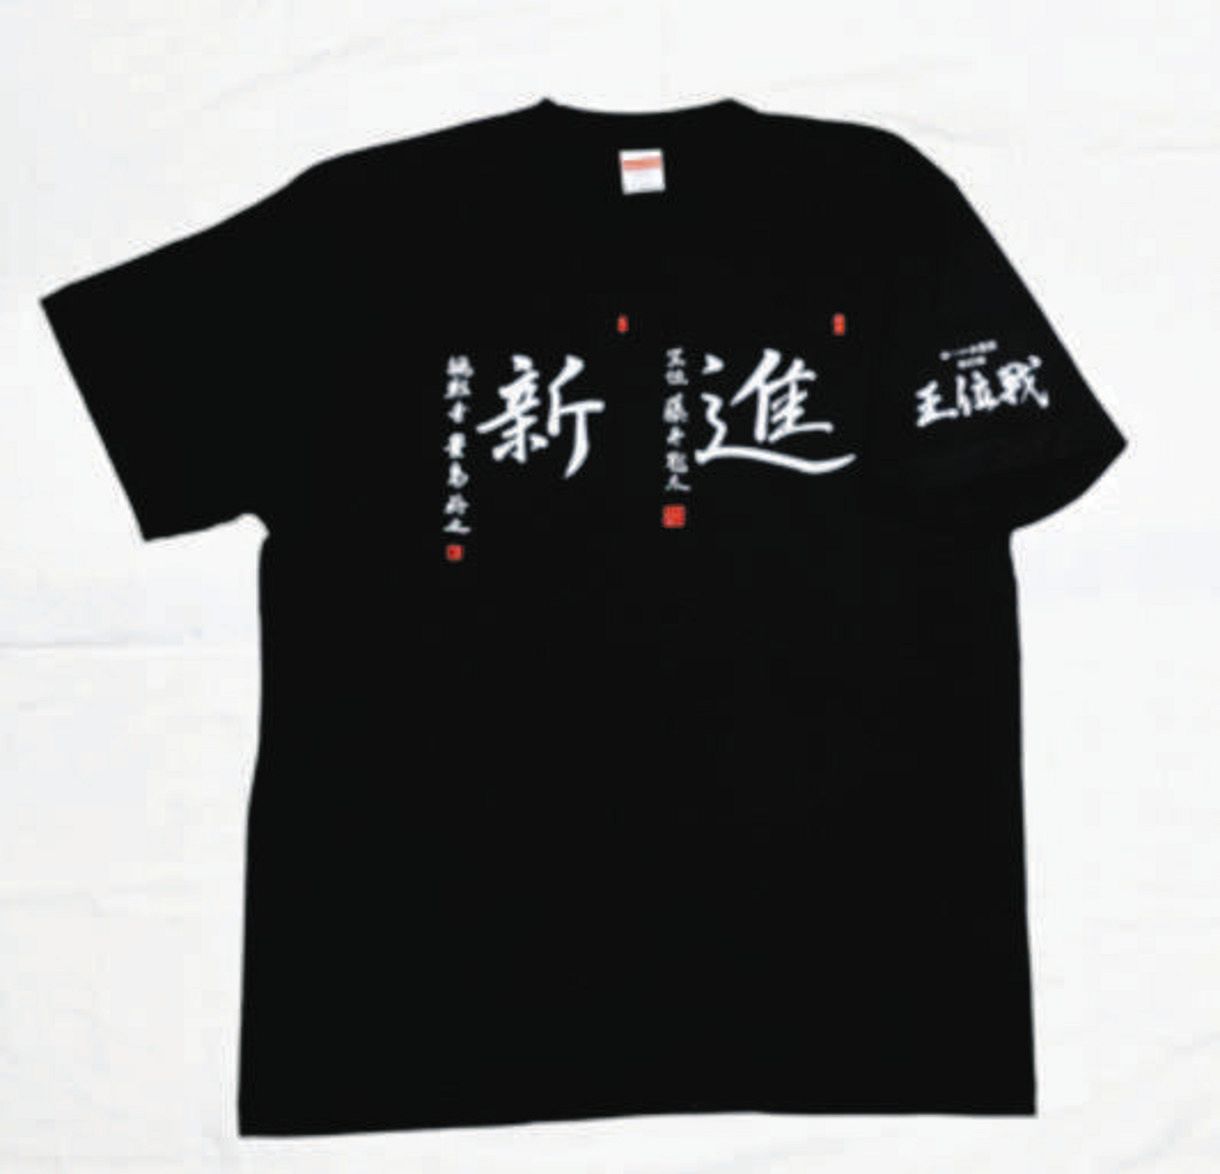 藤井聡太五冠、豊島将之九段の揮毫がデザインされたTシャツ